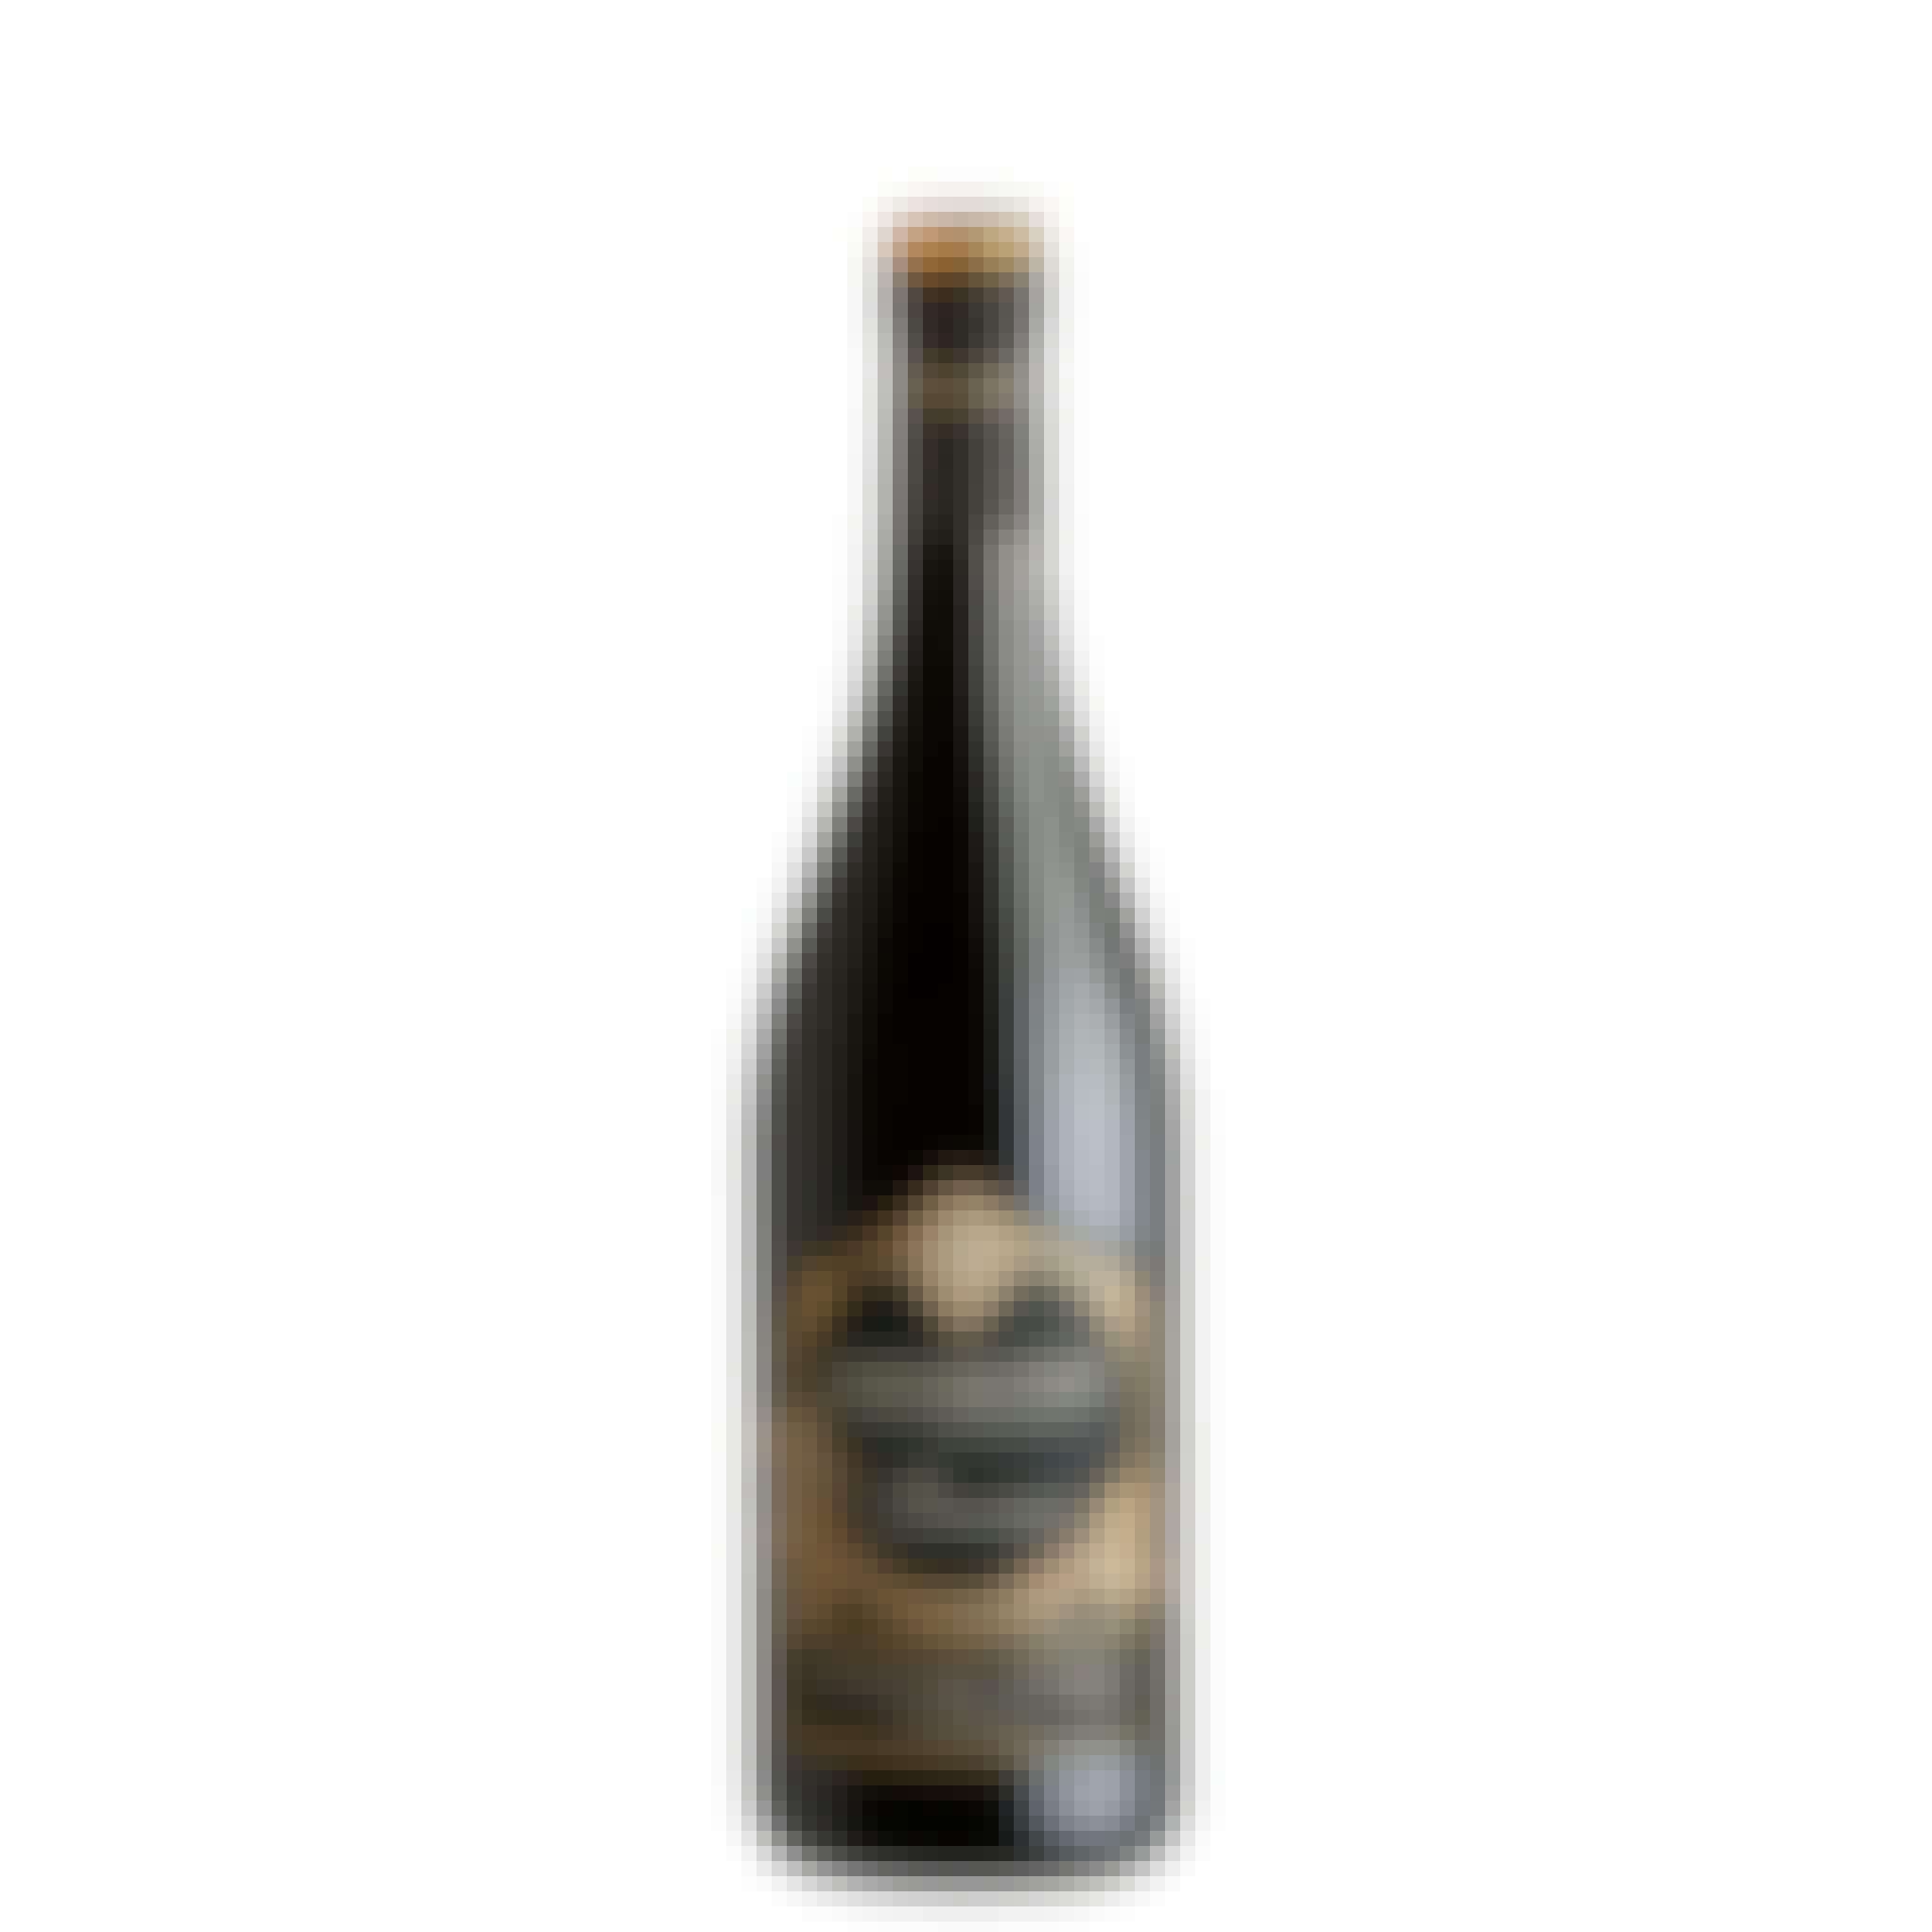 Antiche Terre Venete "Baorna" Single Vineyard Amarone 2016 750ml